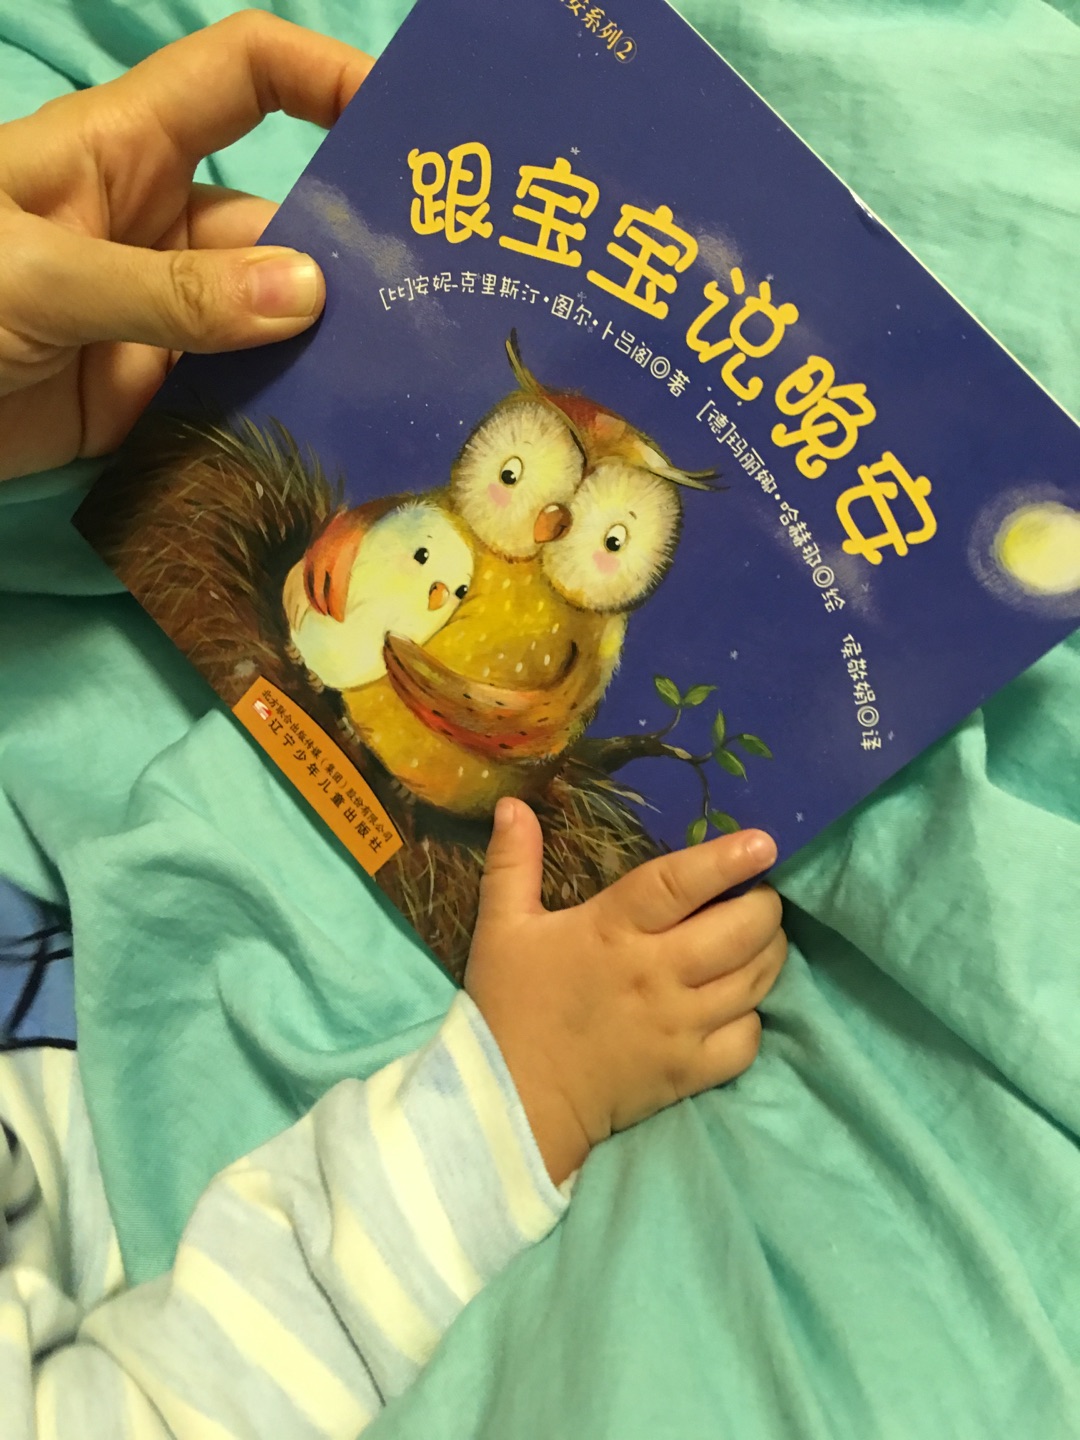 宝宝晚上睡眠读物，图书很好，早教好书籍，宝宝8个月，虽然不懂，但是图片颜色鲜艳吸引眼球！